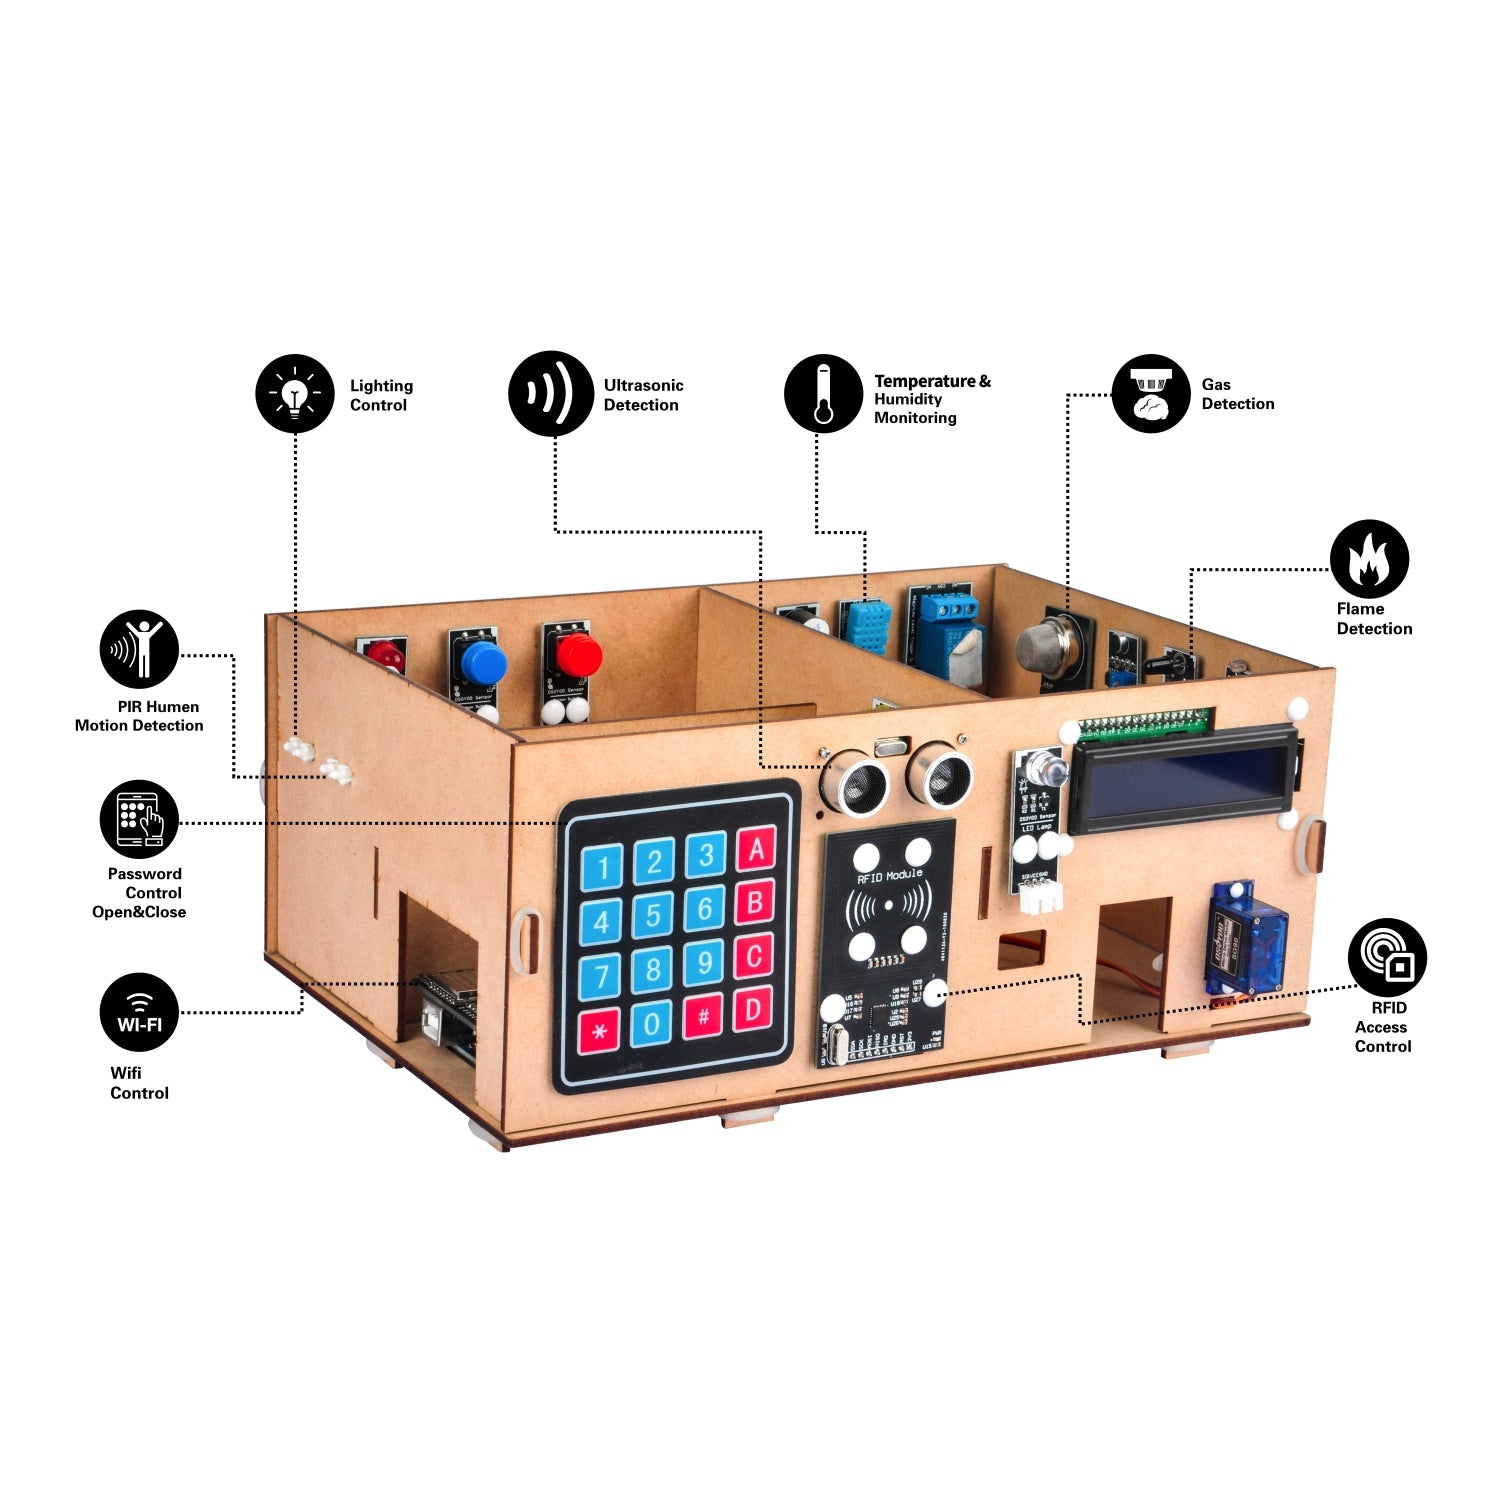 OSOYOO IoT-Holzhaus-Lernset für Arduino MEGA2560, Smart Home Elektronisches STEM-Starterset, Lernen im Internet der Dinge